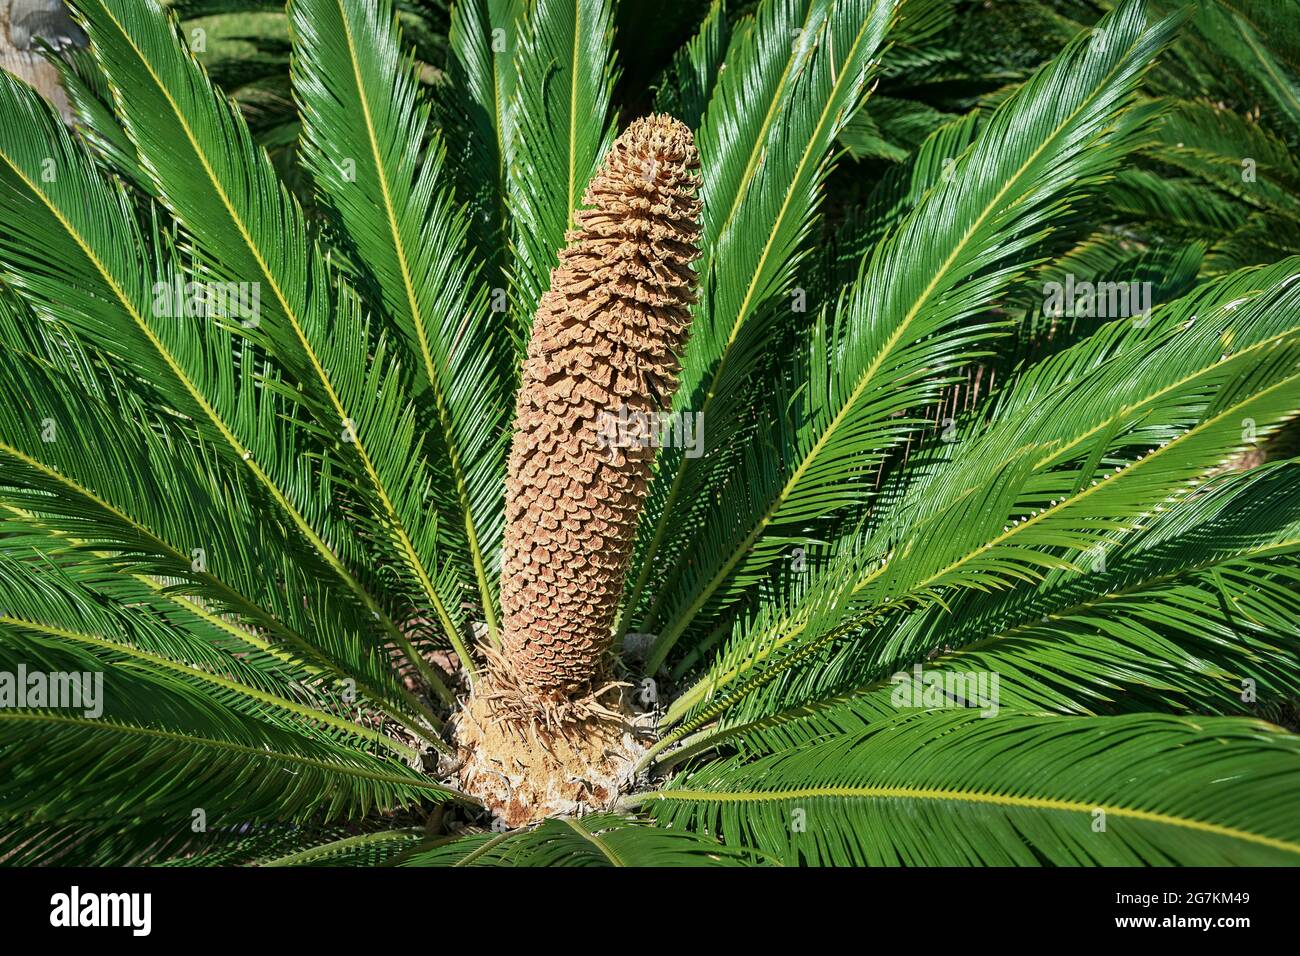 Une fleur Cycas Revoluta mature de palmier sagou, de forme conique, d'orange pâle, entourée de grandes frondes vertes et brillantes Banque D'Images